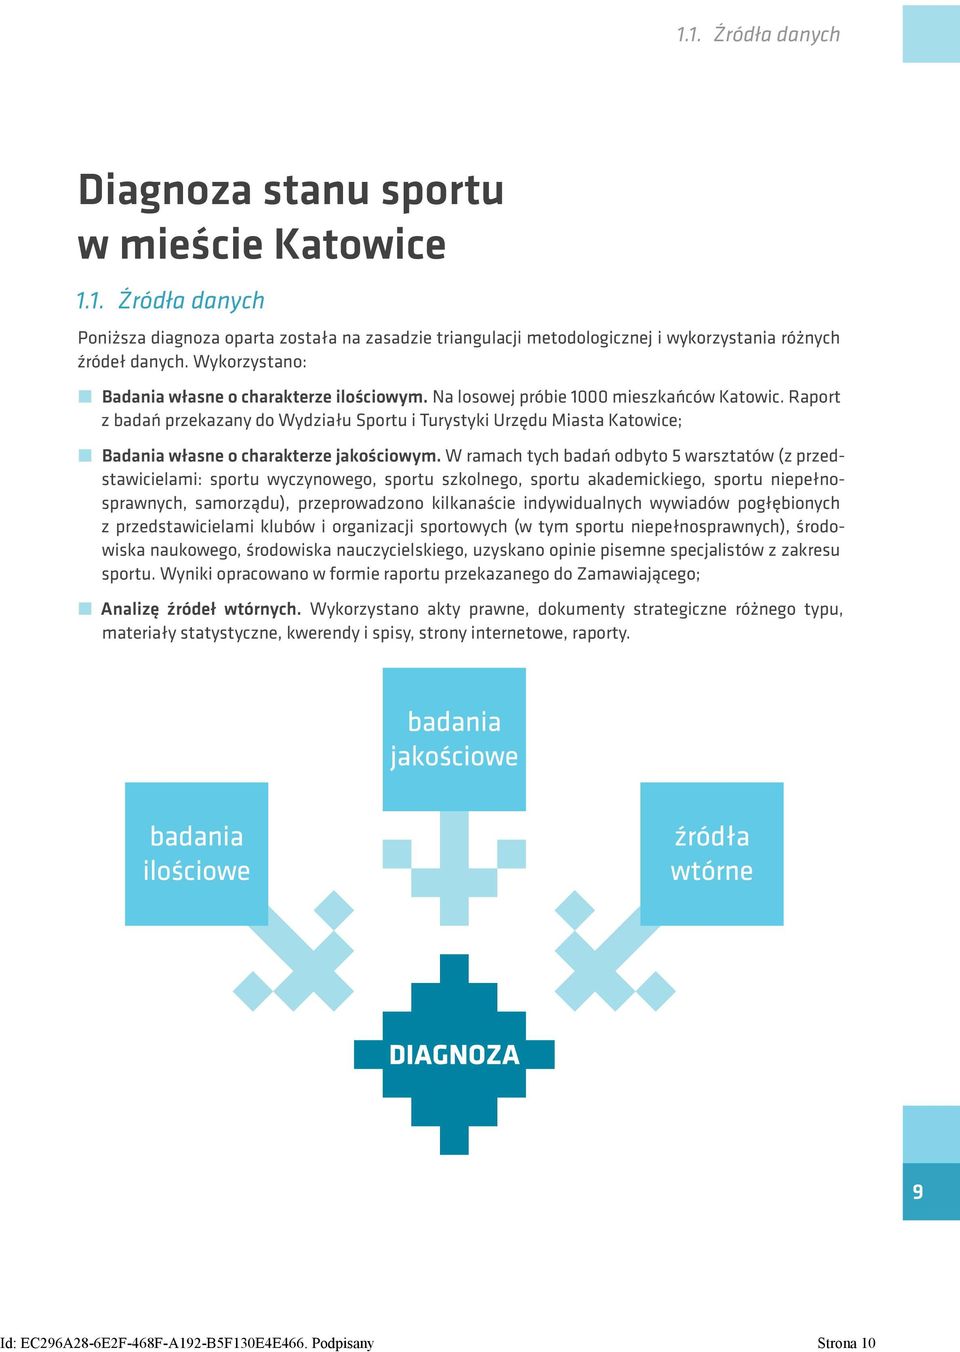 Raport z badań przekazany do Wydziału Sportu i Turystyki Urzędu Miasta Katowice; Badania własne o charakterze jakościowym.